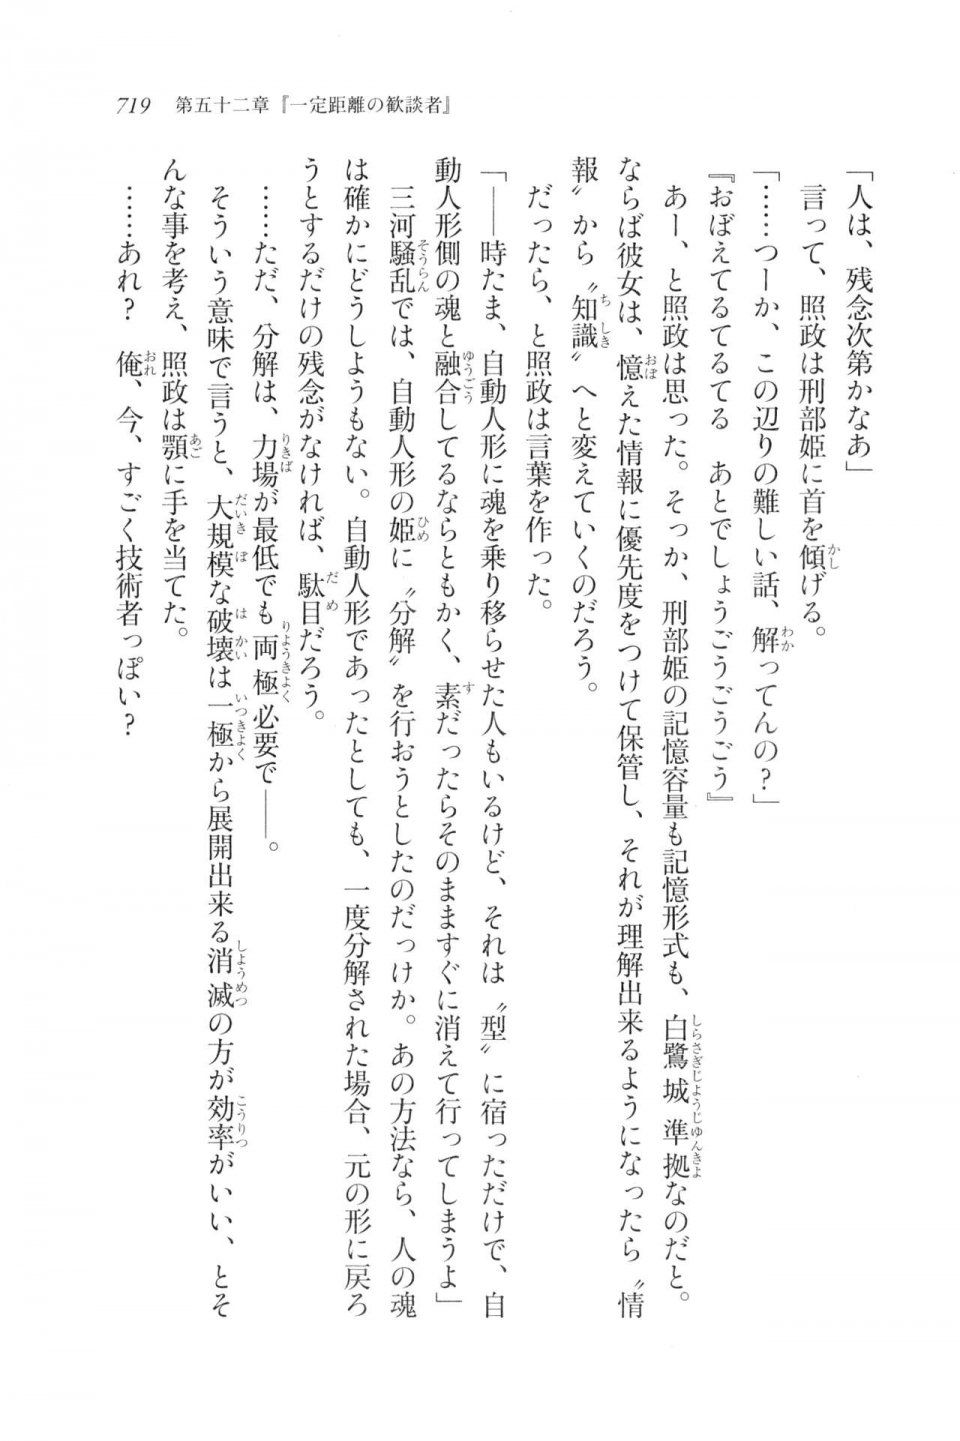 Kyoukai Senjou no Horizon LN Vol 20(8B) - Photo #719